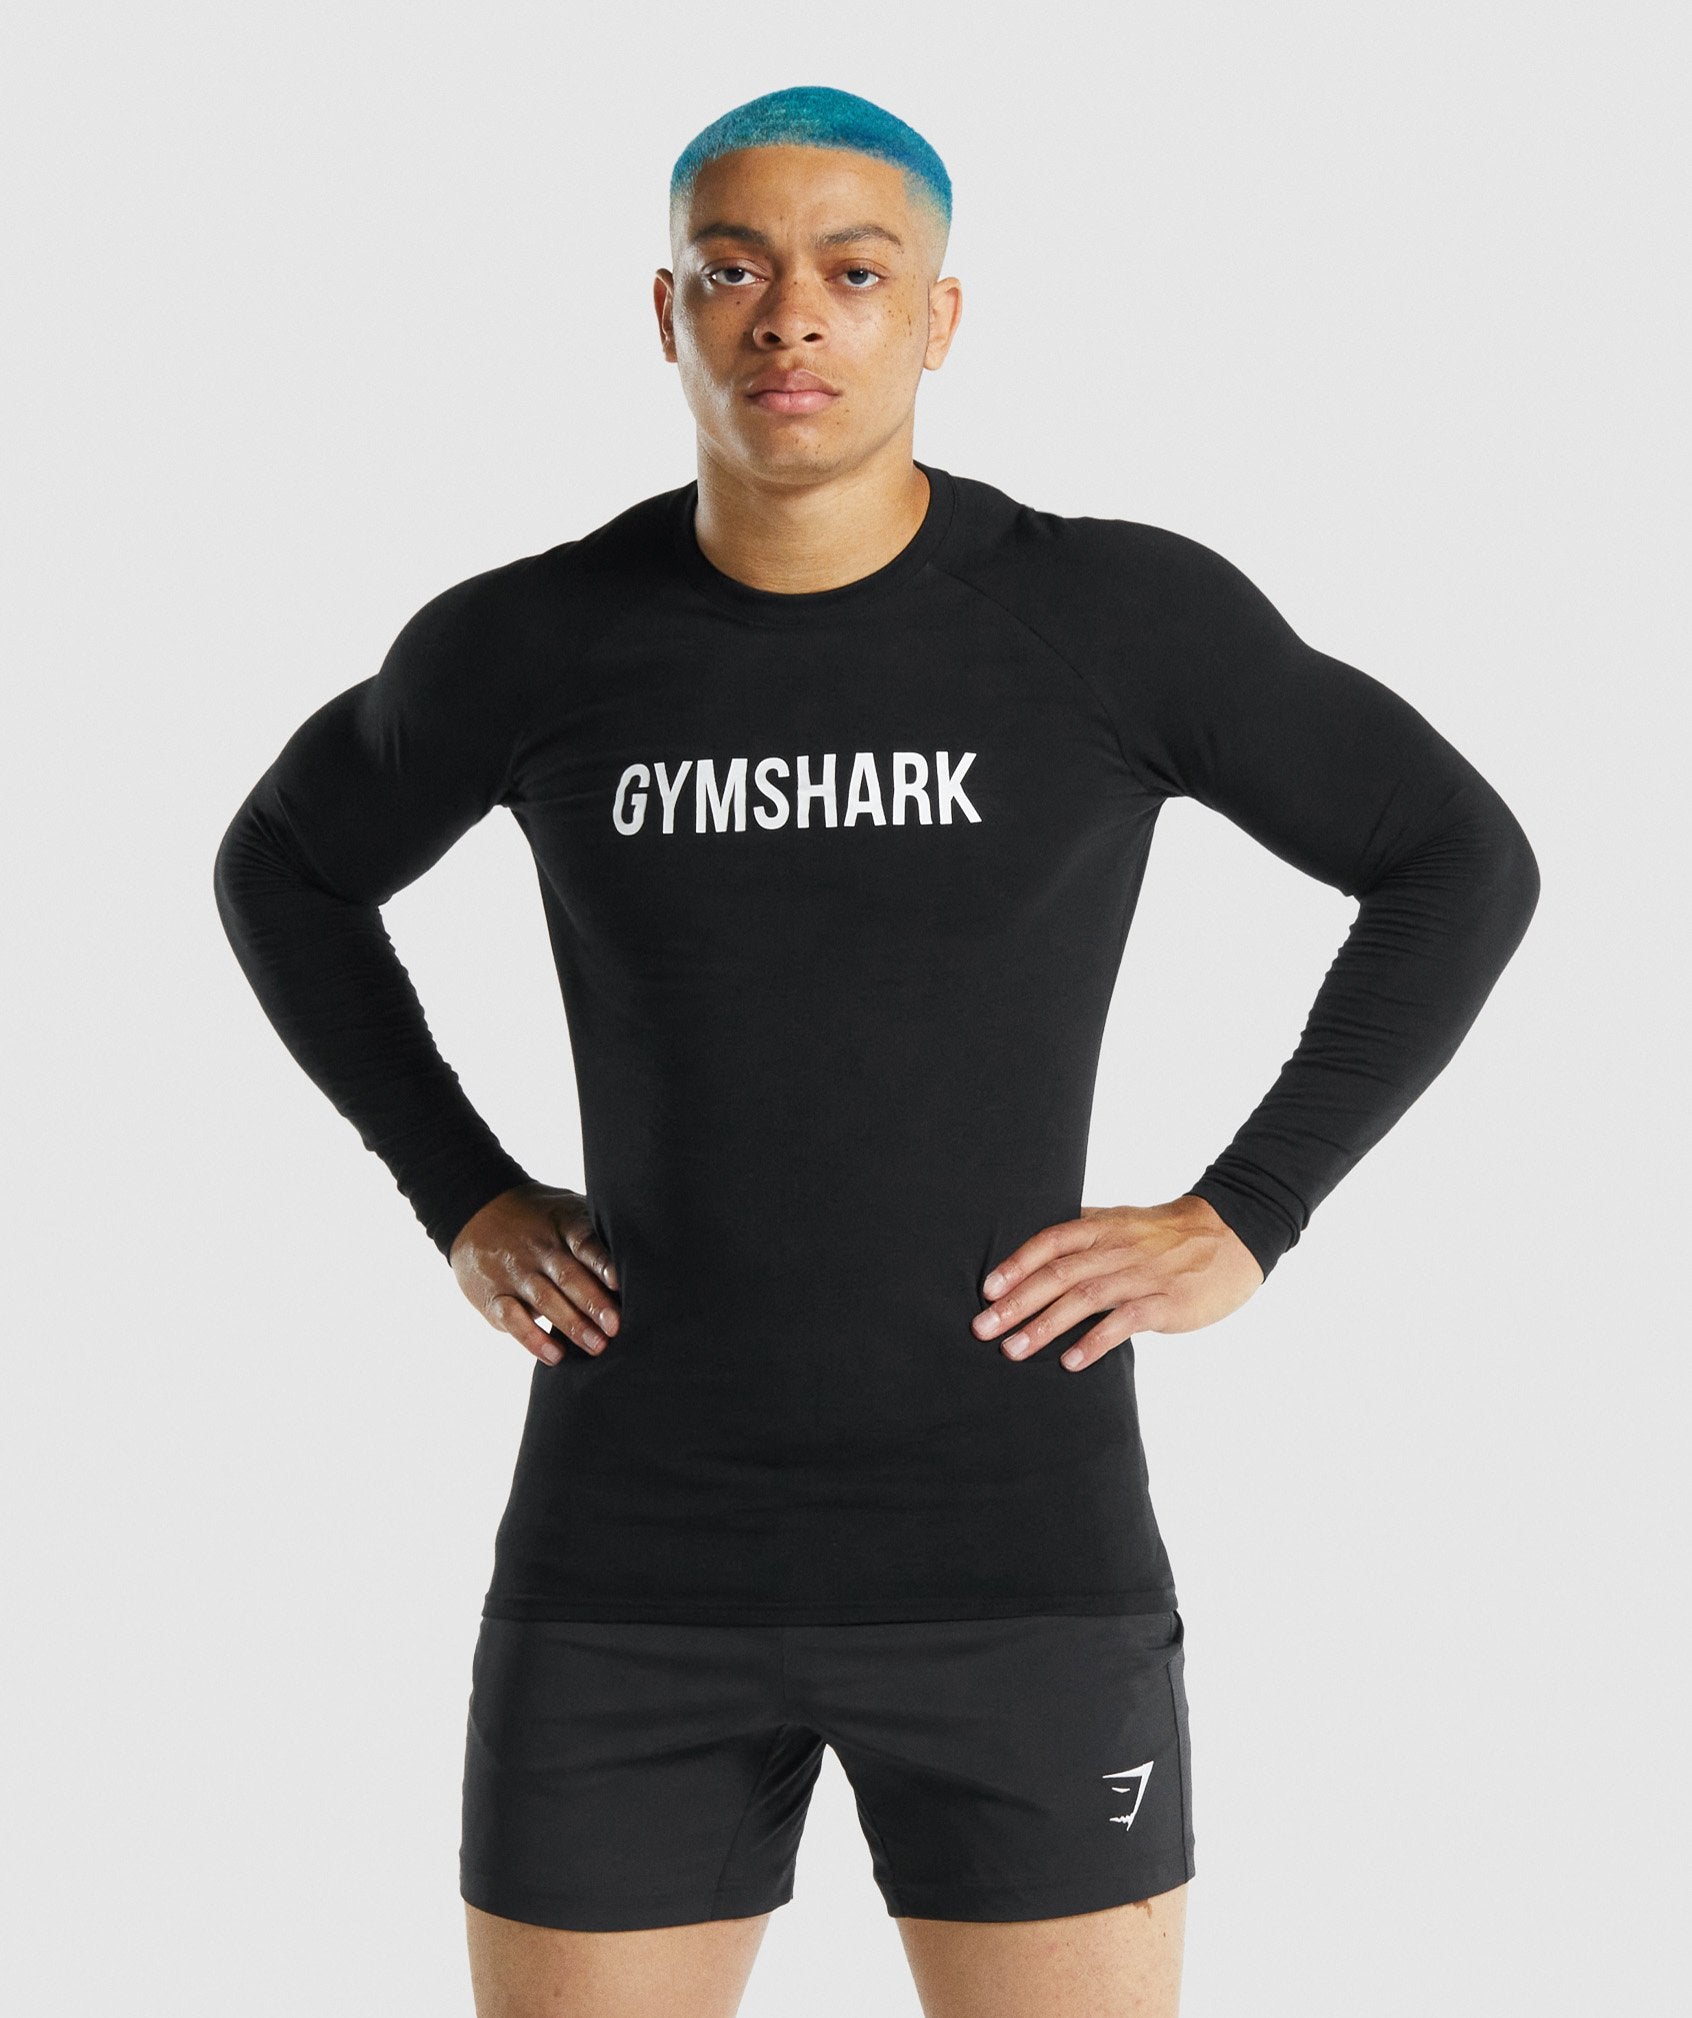 Gymshark Gymshark compression shirt black size: Small